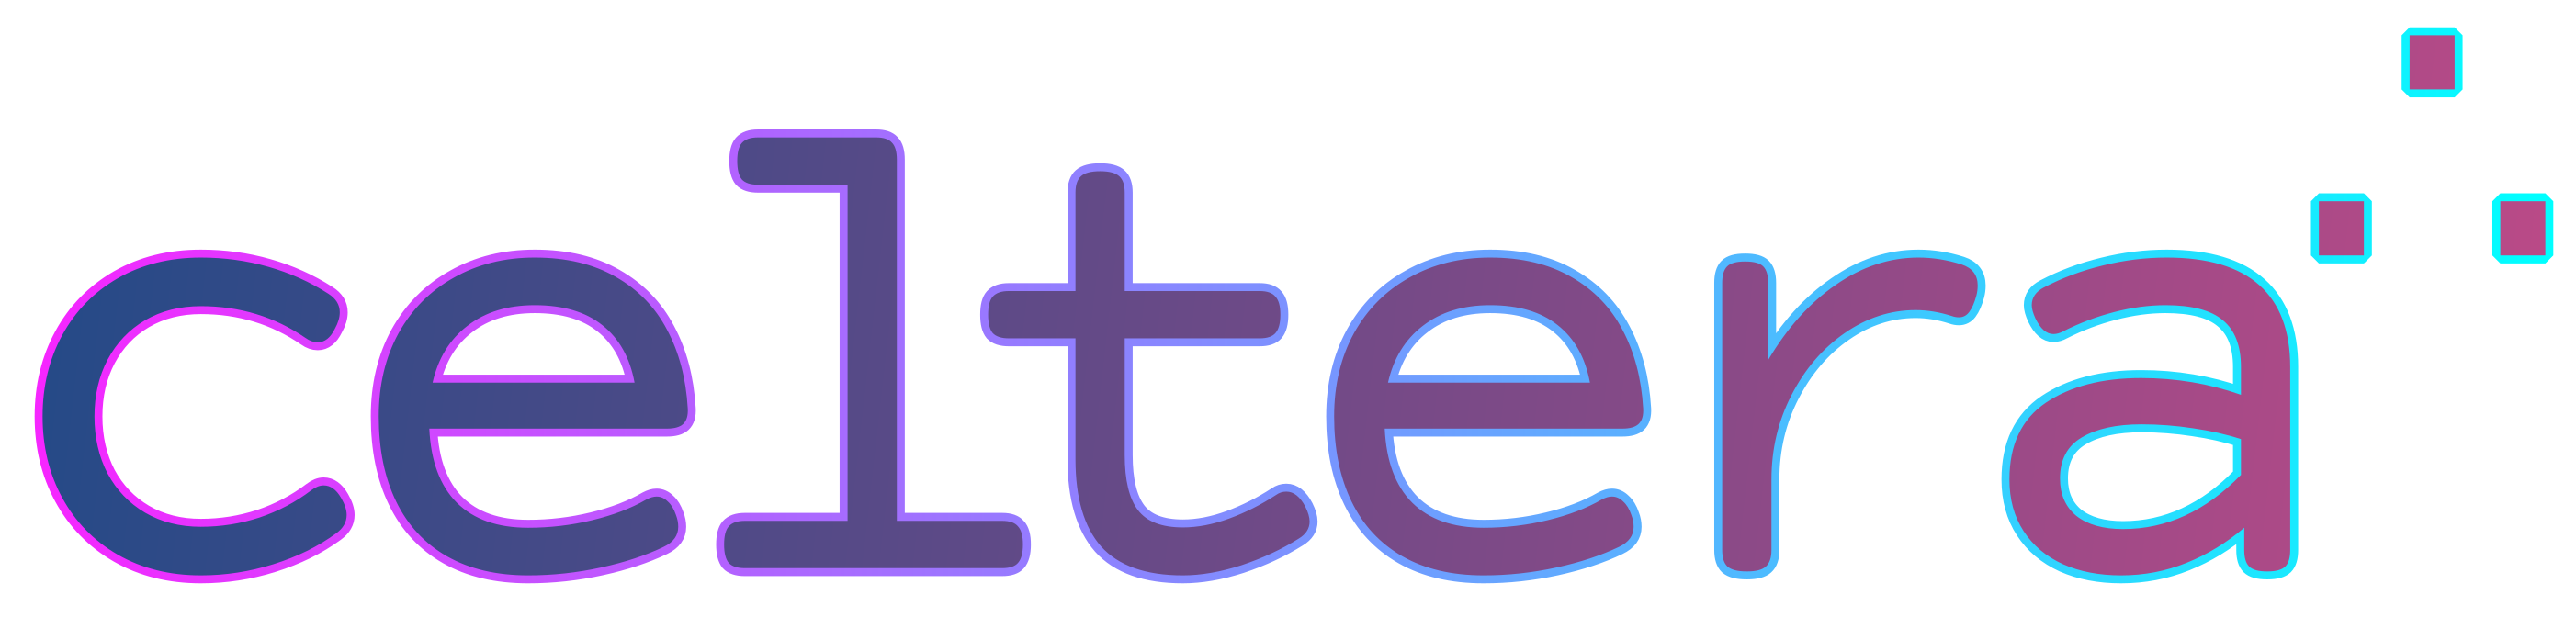 celtera logo